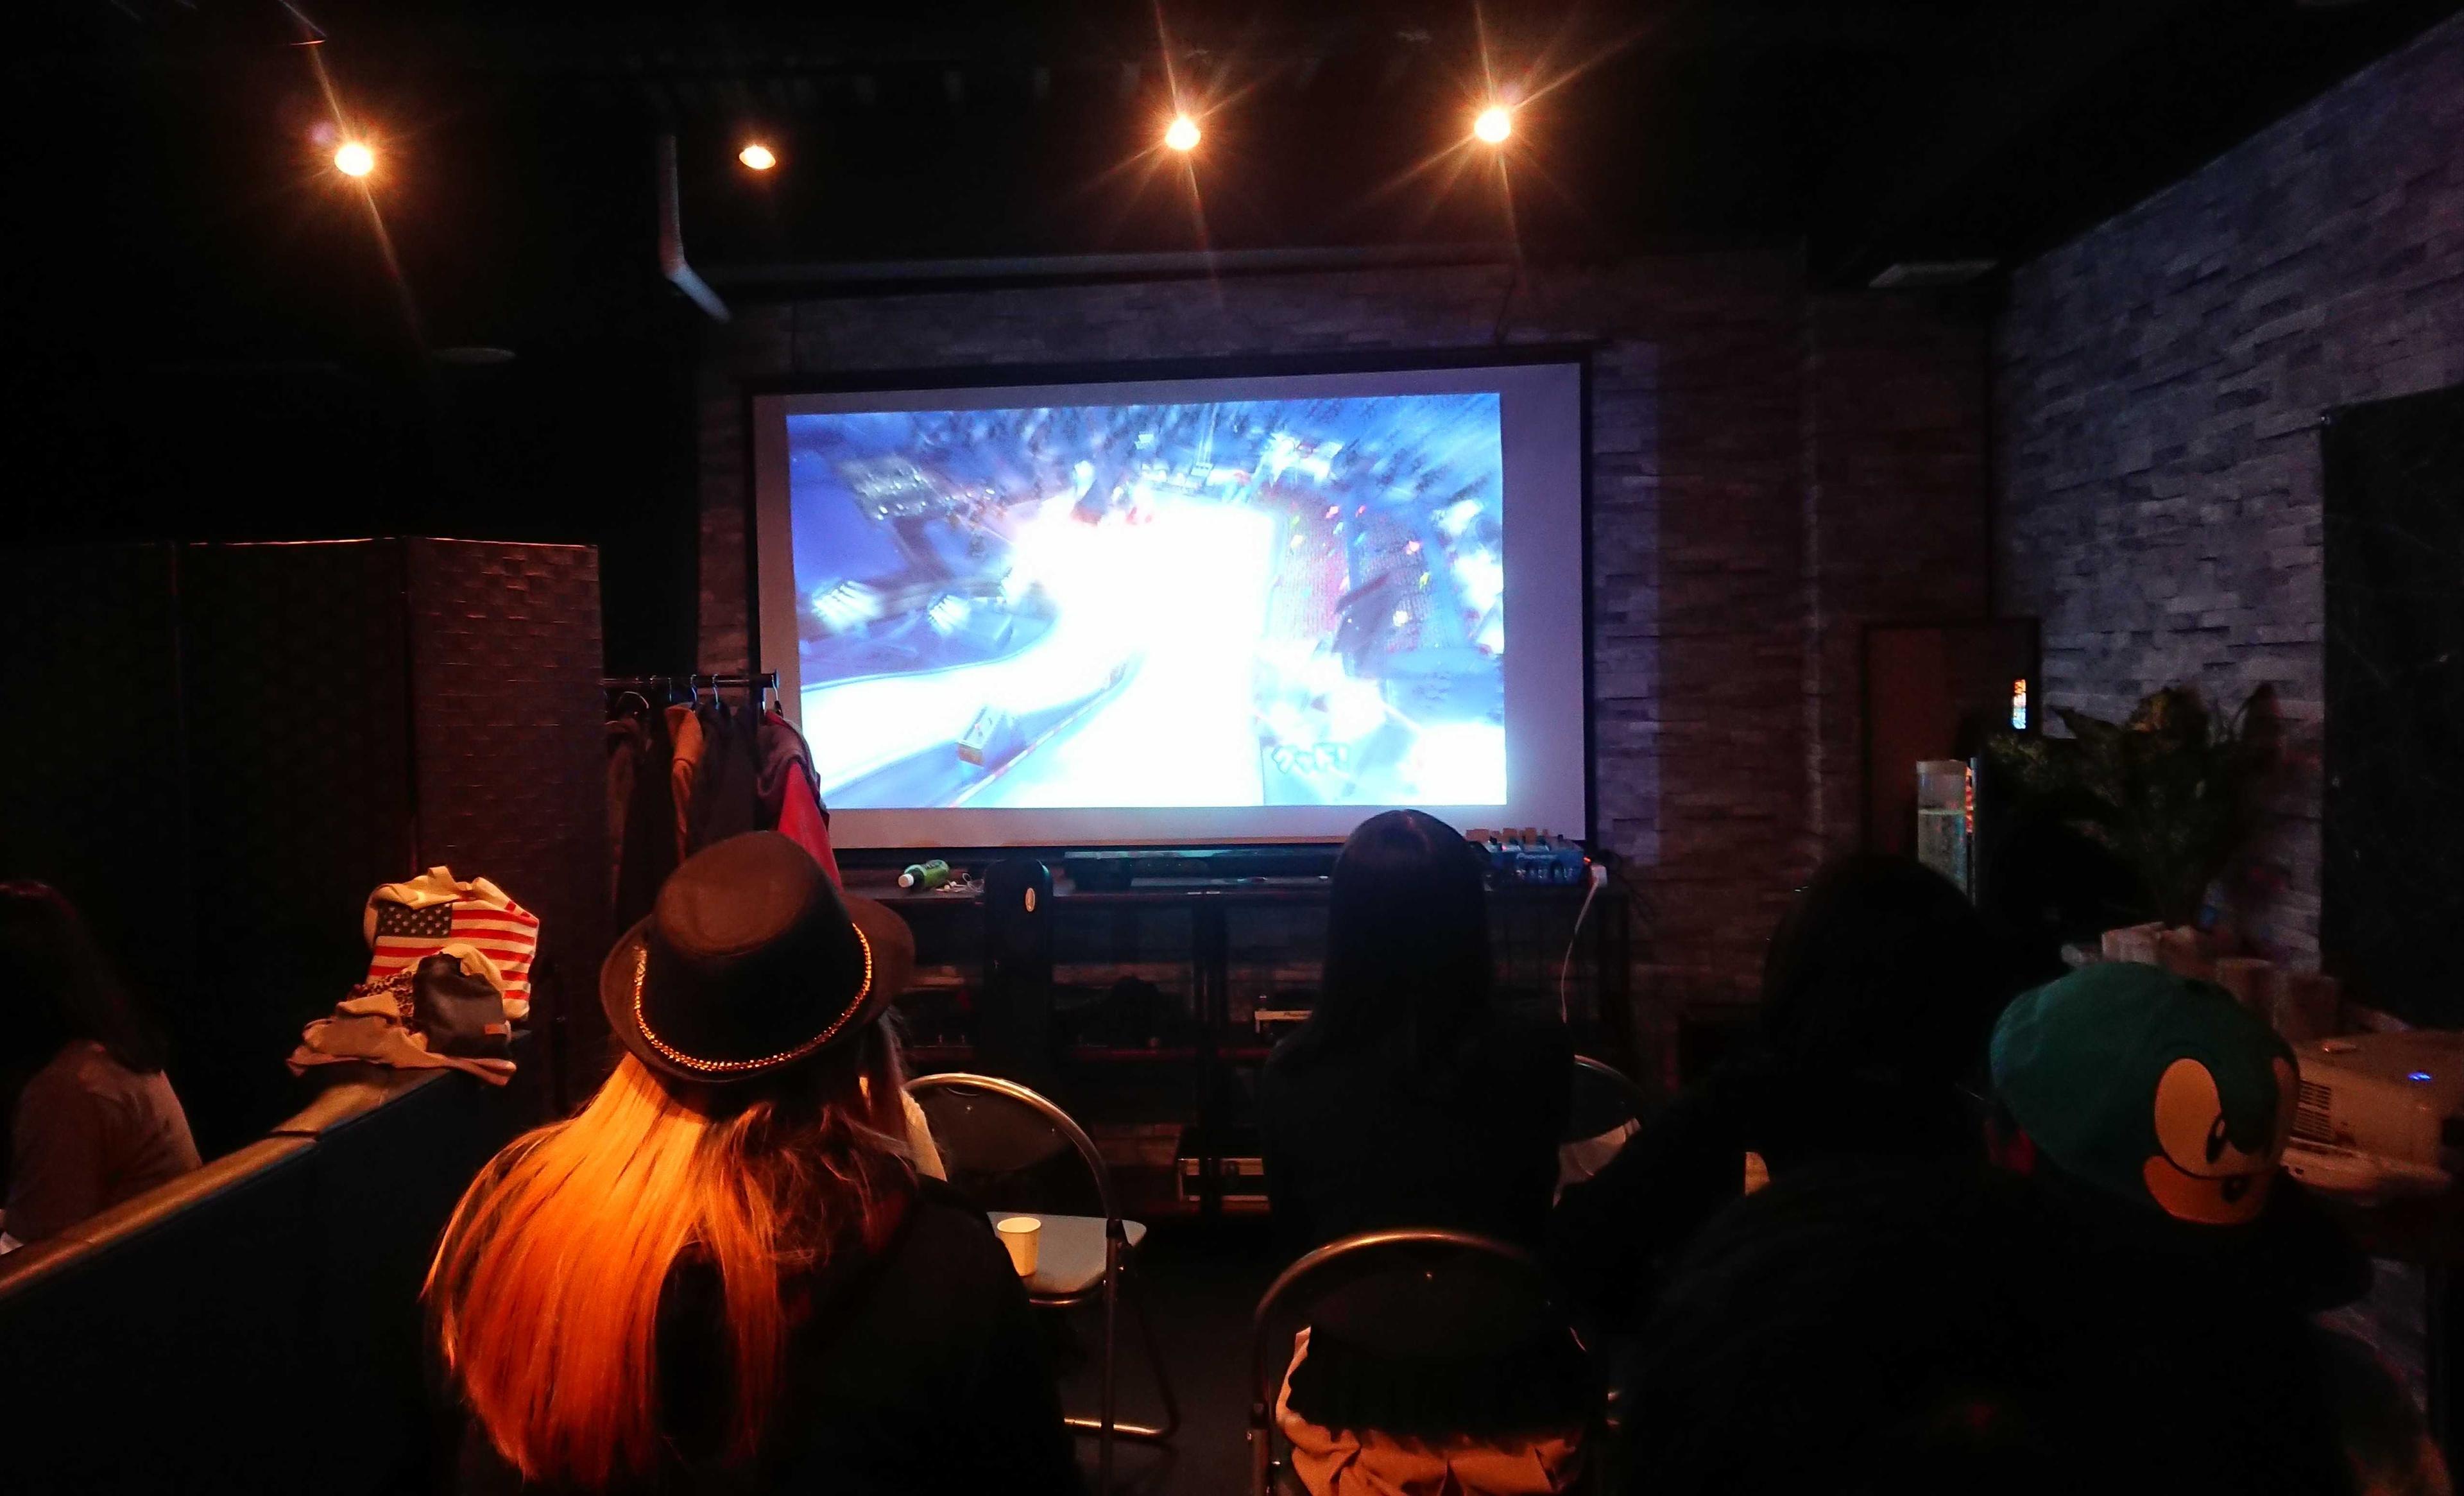 2018/12/15 ソニックゲームオフ3 at 渋谷